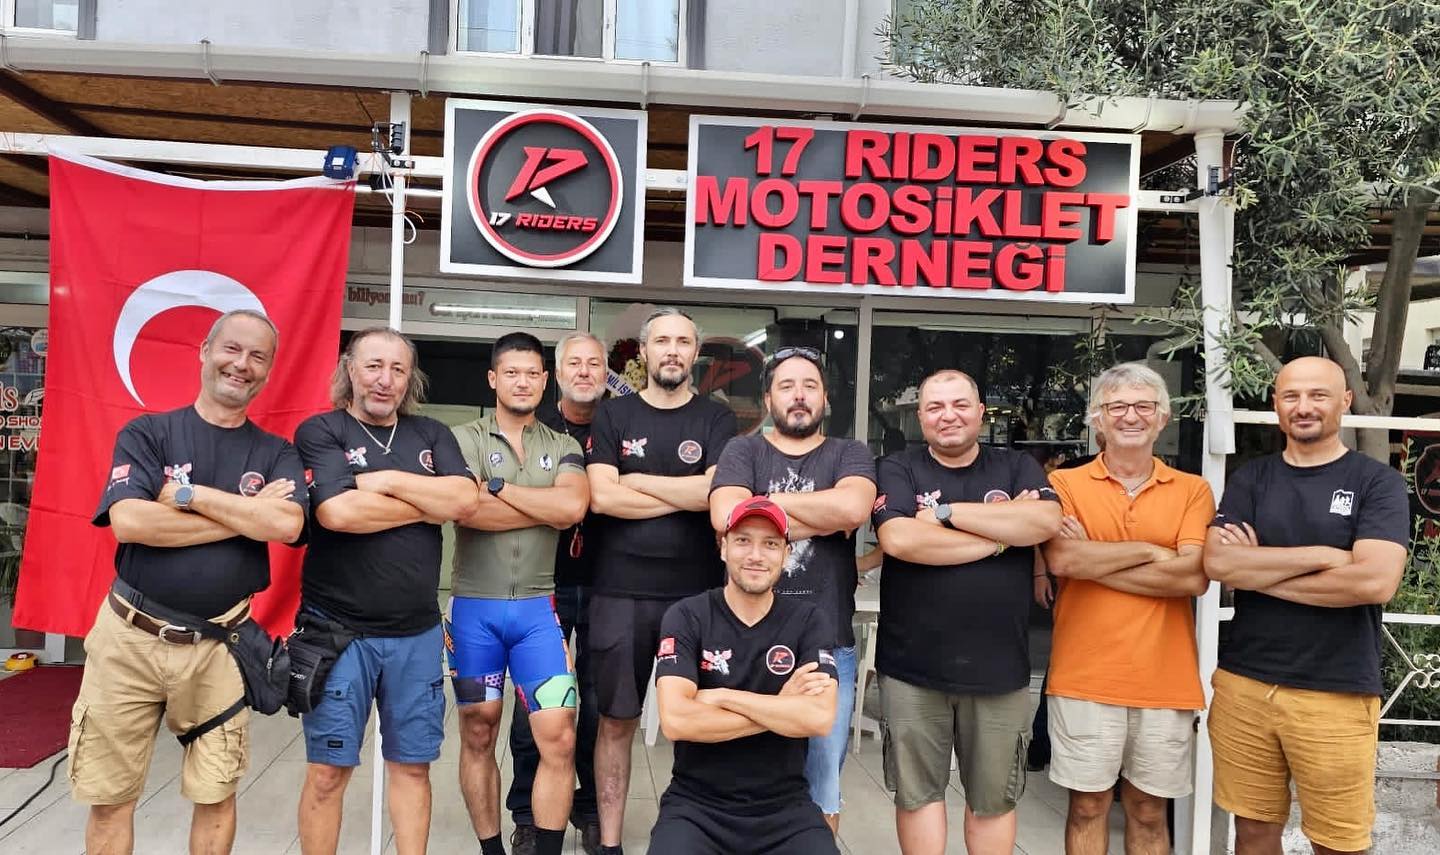 ÇABİP’ten 17Riders Çanakkale Motosiklet Derneği’ne Tebrik Ziyareti